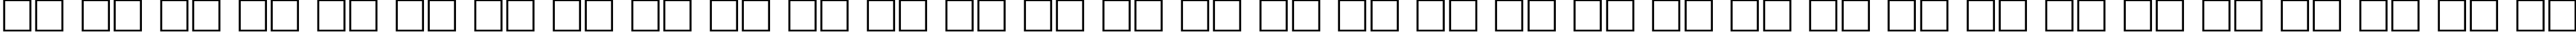 Пример написания русского алфавита шрифтом DynarOutline Bold